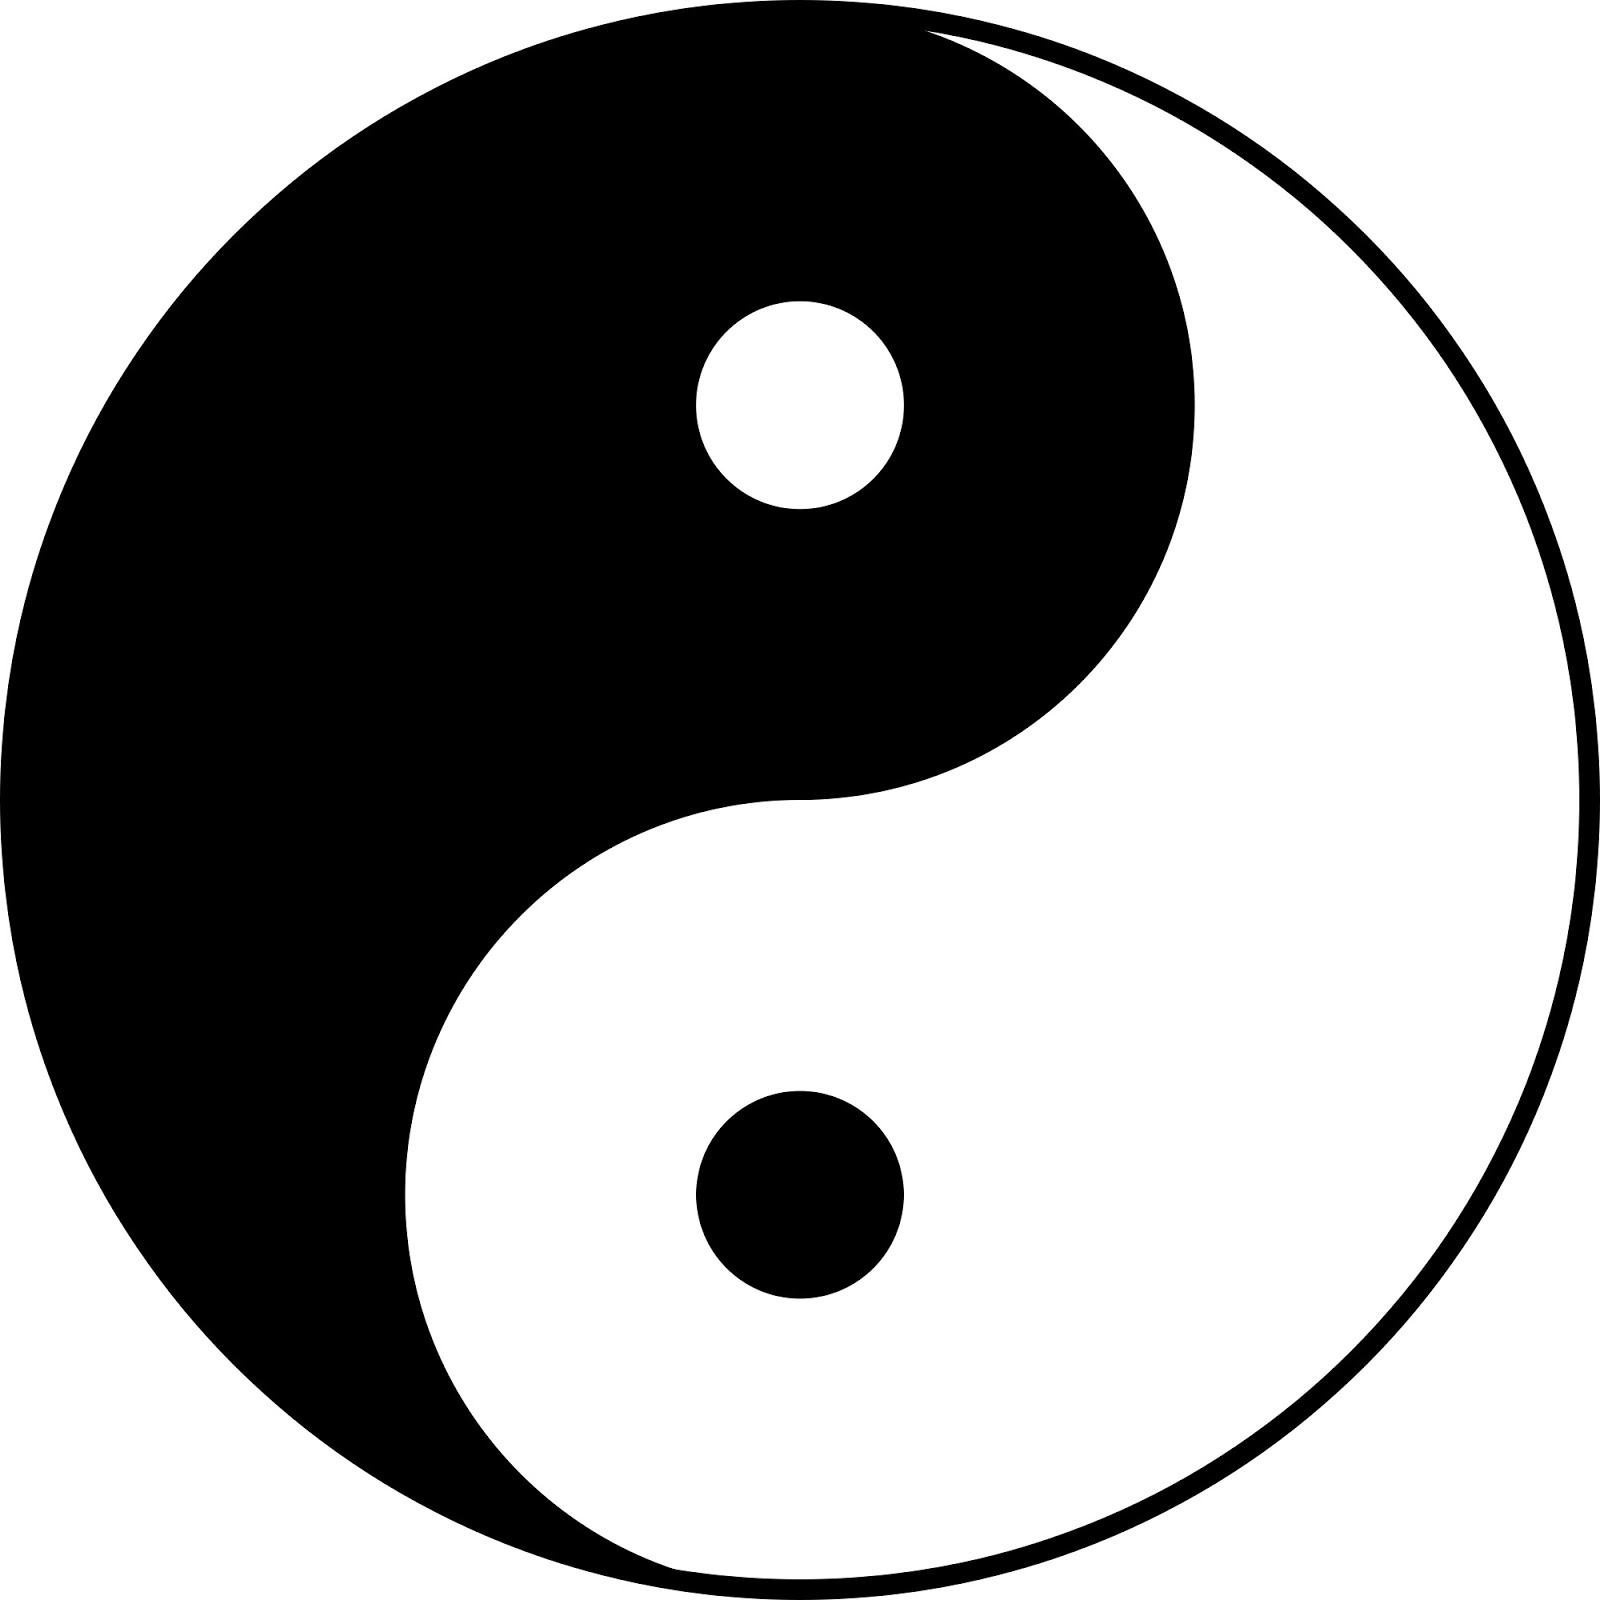 Głośne myślenie/Thinking aloud: O symbolu yin-yang